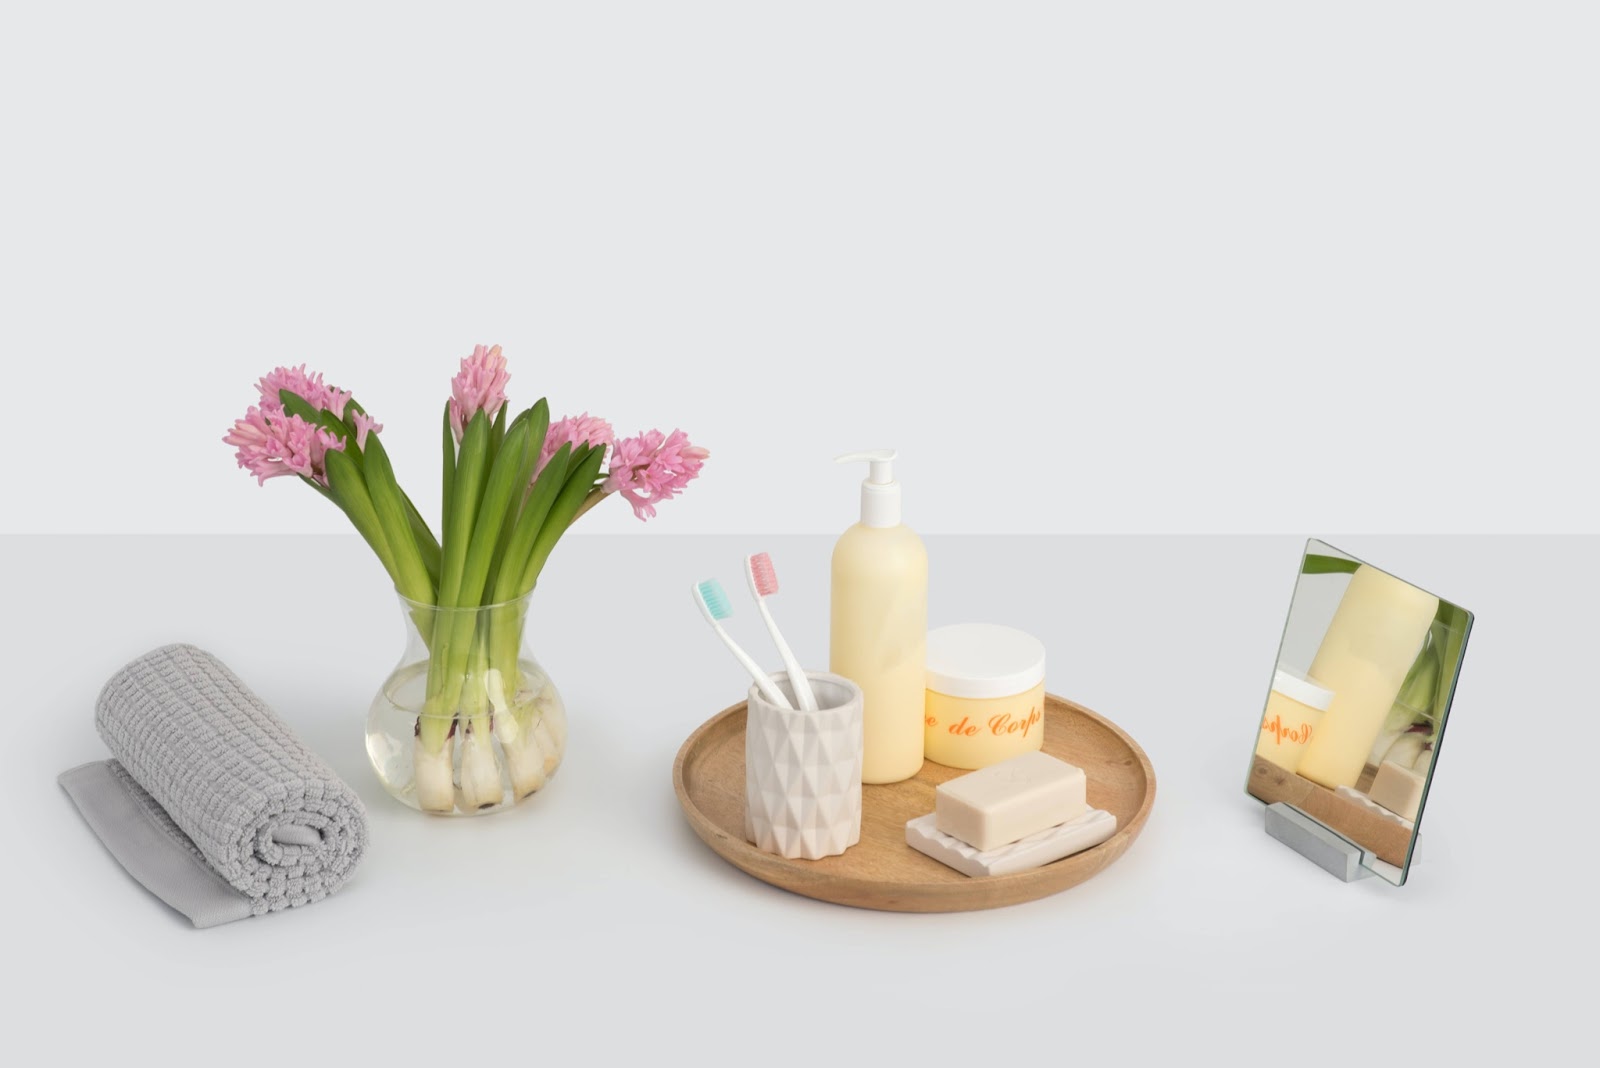 Foto di alcuni prodotti di bellezza e di igiene orale disposti su una superficie bianca con un vaso di fiori, un asciugamano e uno specchio